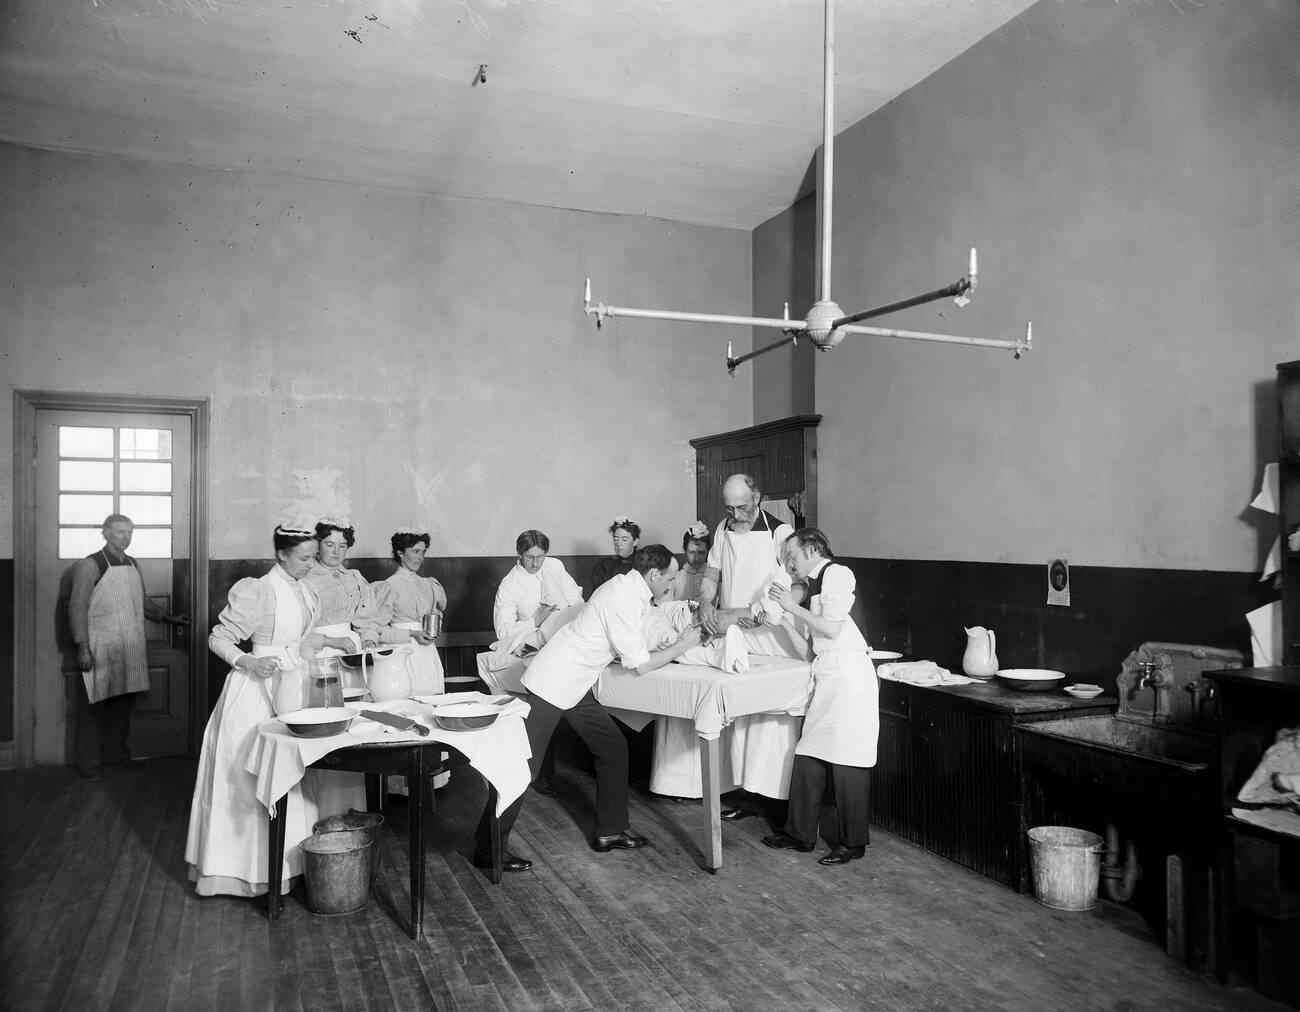 Operation At Brooklyn Navy Yard Hospital, Brooklyn, 1900